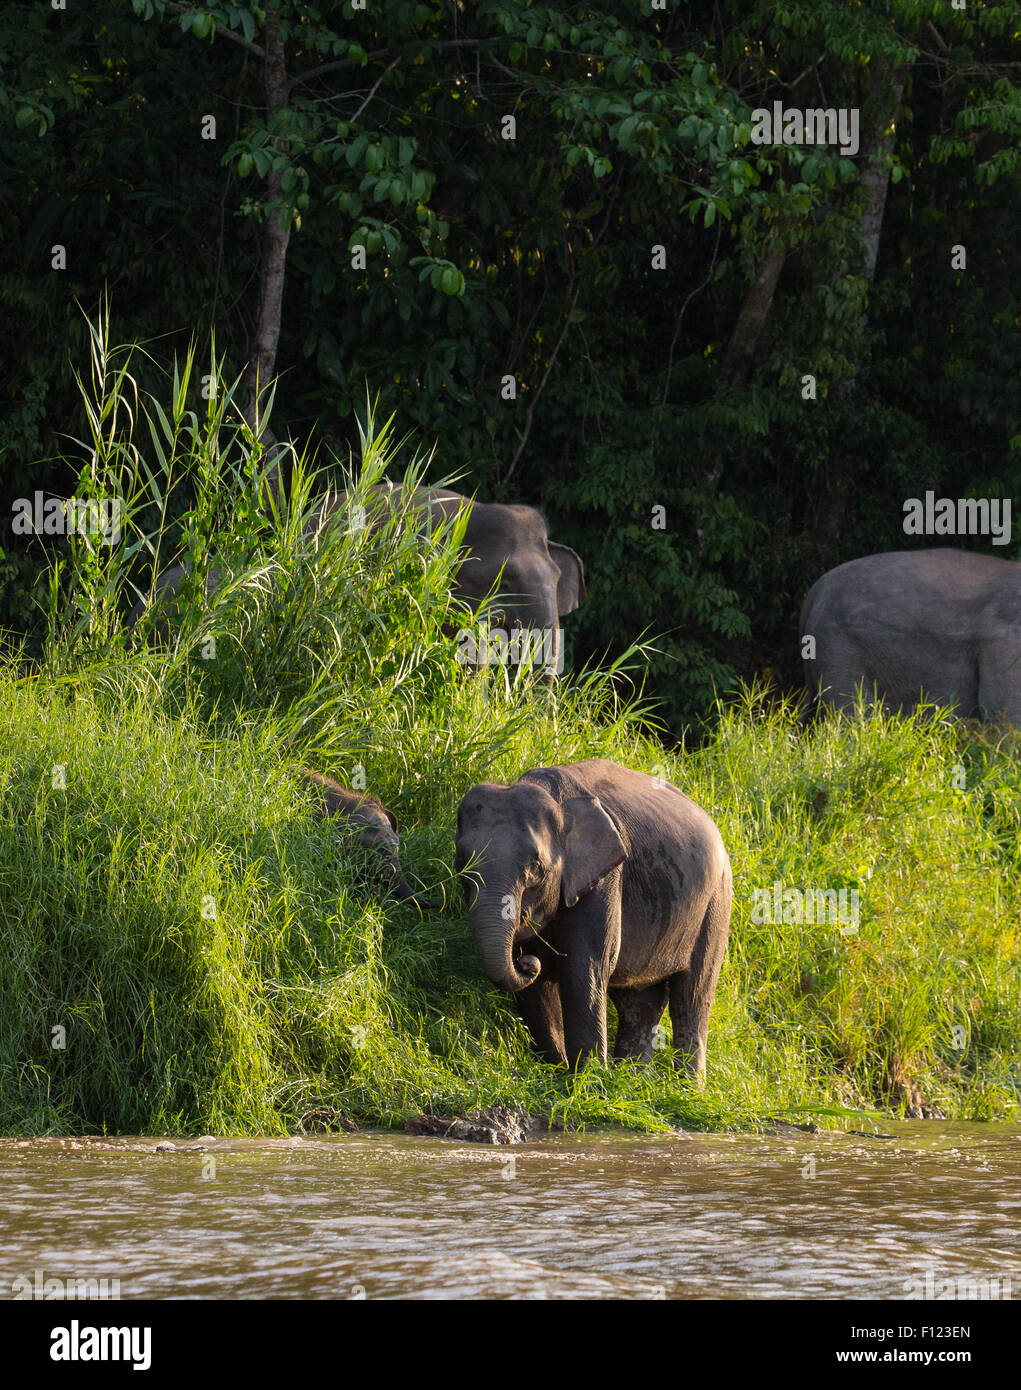 Les éléphants pygmées de Bornéo (Elephas maximus borneensis) sur la rive de la rivière Kinabatangan, Sabah, Malaisie Banque D'Images